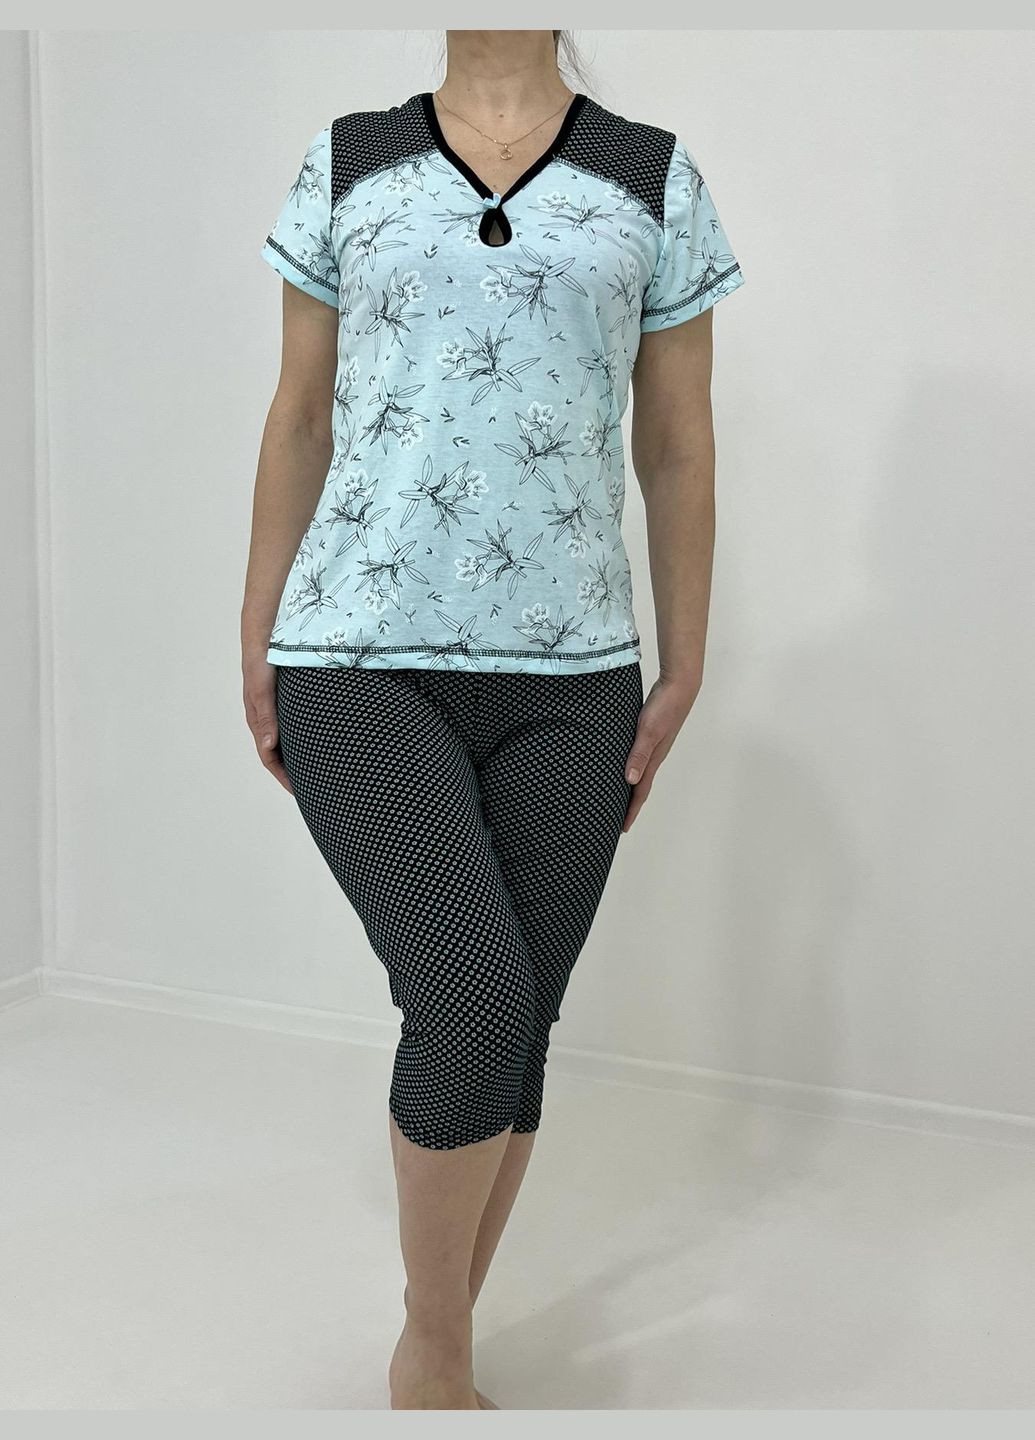 Бирюзовая всесезон домашний женский комплект viktoriya (бриджи + футболка) 50-52 бирюзовый 71444545-1 Triko